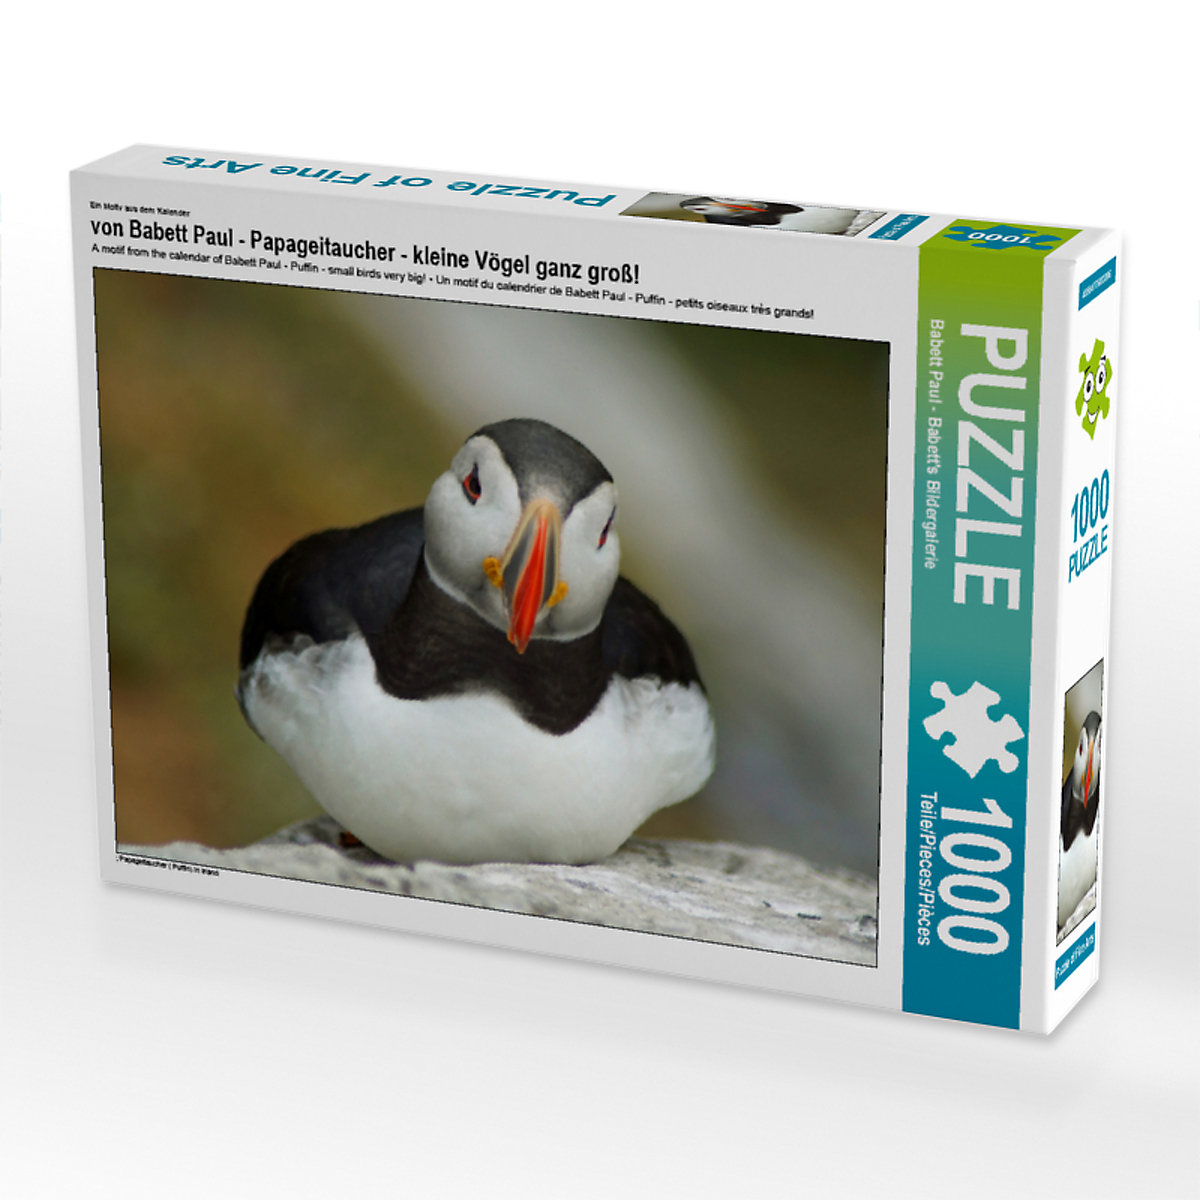 CALVENDO® Puzzle CALVENDO Puzzle von Babett Paul Papageitaucher kleine Vögel ganz groß! 1000 Teile Foto-Puzzle für glückliche Stunden